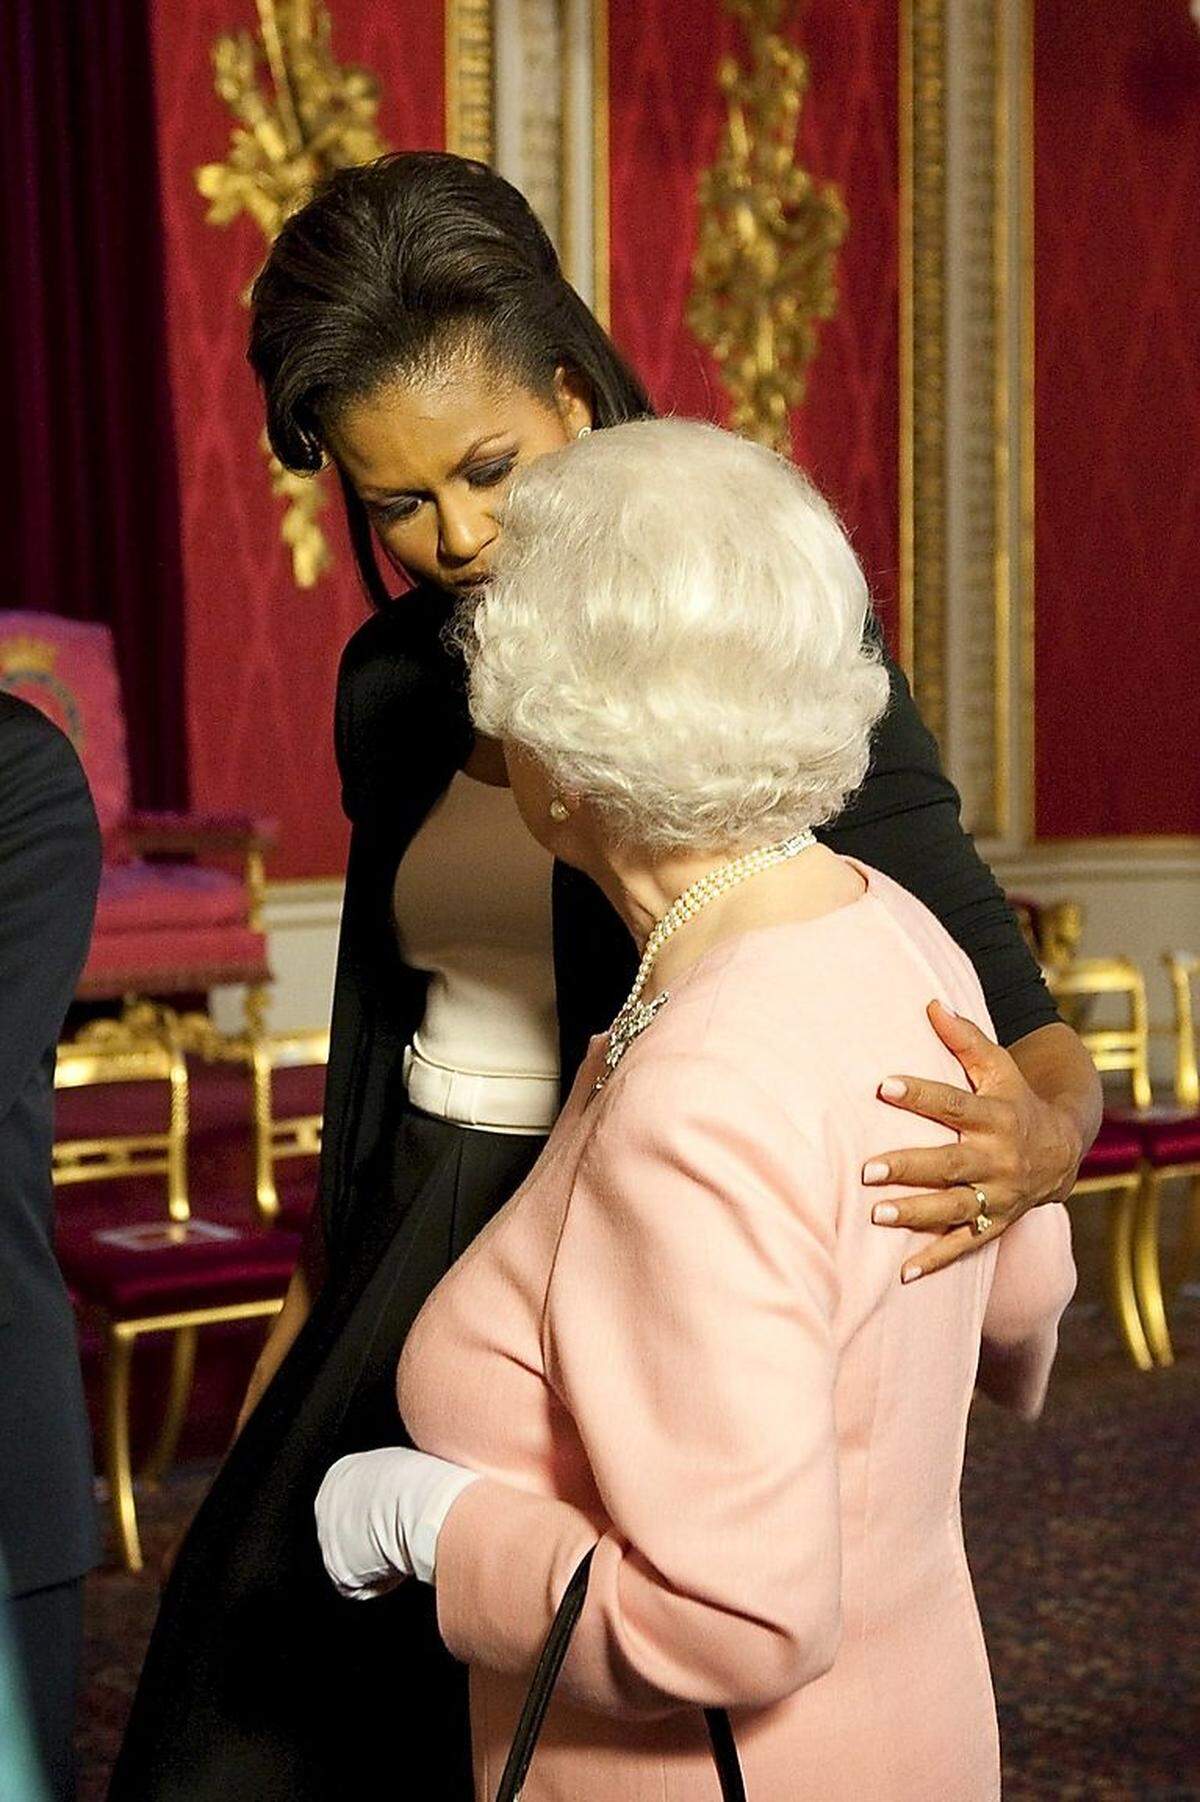 Michelle Obama ist allerdings gleich zu Beginn der Präsidentschaft ihres Gatten ebenfalls schon einmal mit einer protokollarisch unangebrachten Berührung aufgefallen, als sie die britische Queen Elizabeth II. an der Schulter berührte. Eine Geste, die die Queen bei einem Empfang wenige Wochen später selbst wiederholte, was für große Sympathie zwischen den beiden Frauen spricht.Als der damalige australische Ministerpräsident Paul Keating 1992 die Königin umarmte, verspotteten ihn die britischen Boulevardmedien in Anlehnung an das Kinderbuch "Wizard of Oz" ("Der Zauberer von Oz") als "Lizard of Oz" ("Eidechse von Oz"). Bei Obama wirkte die Geste hingegen authentisch und auf Gegenseitigkeit beruhend.